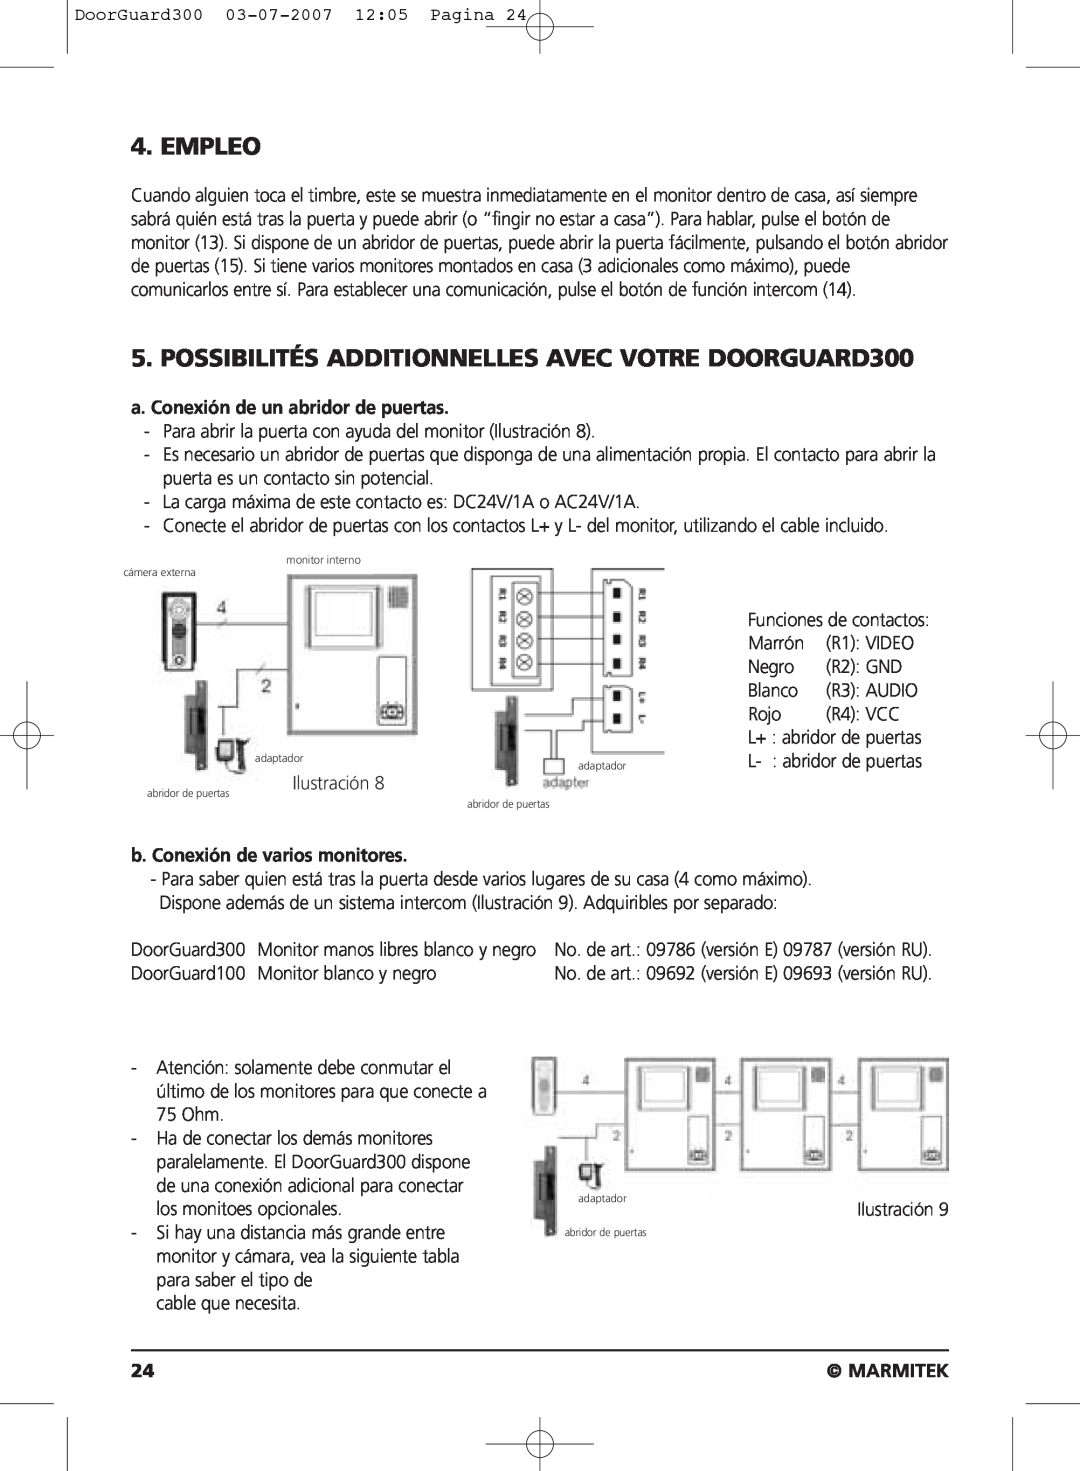 Marmitek DOORGUARD300TM user manual Empleo, a. Conexión de un abridor de puertas, b. Conexión de varios monitores, Marmitek 